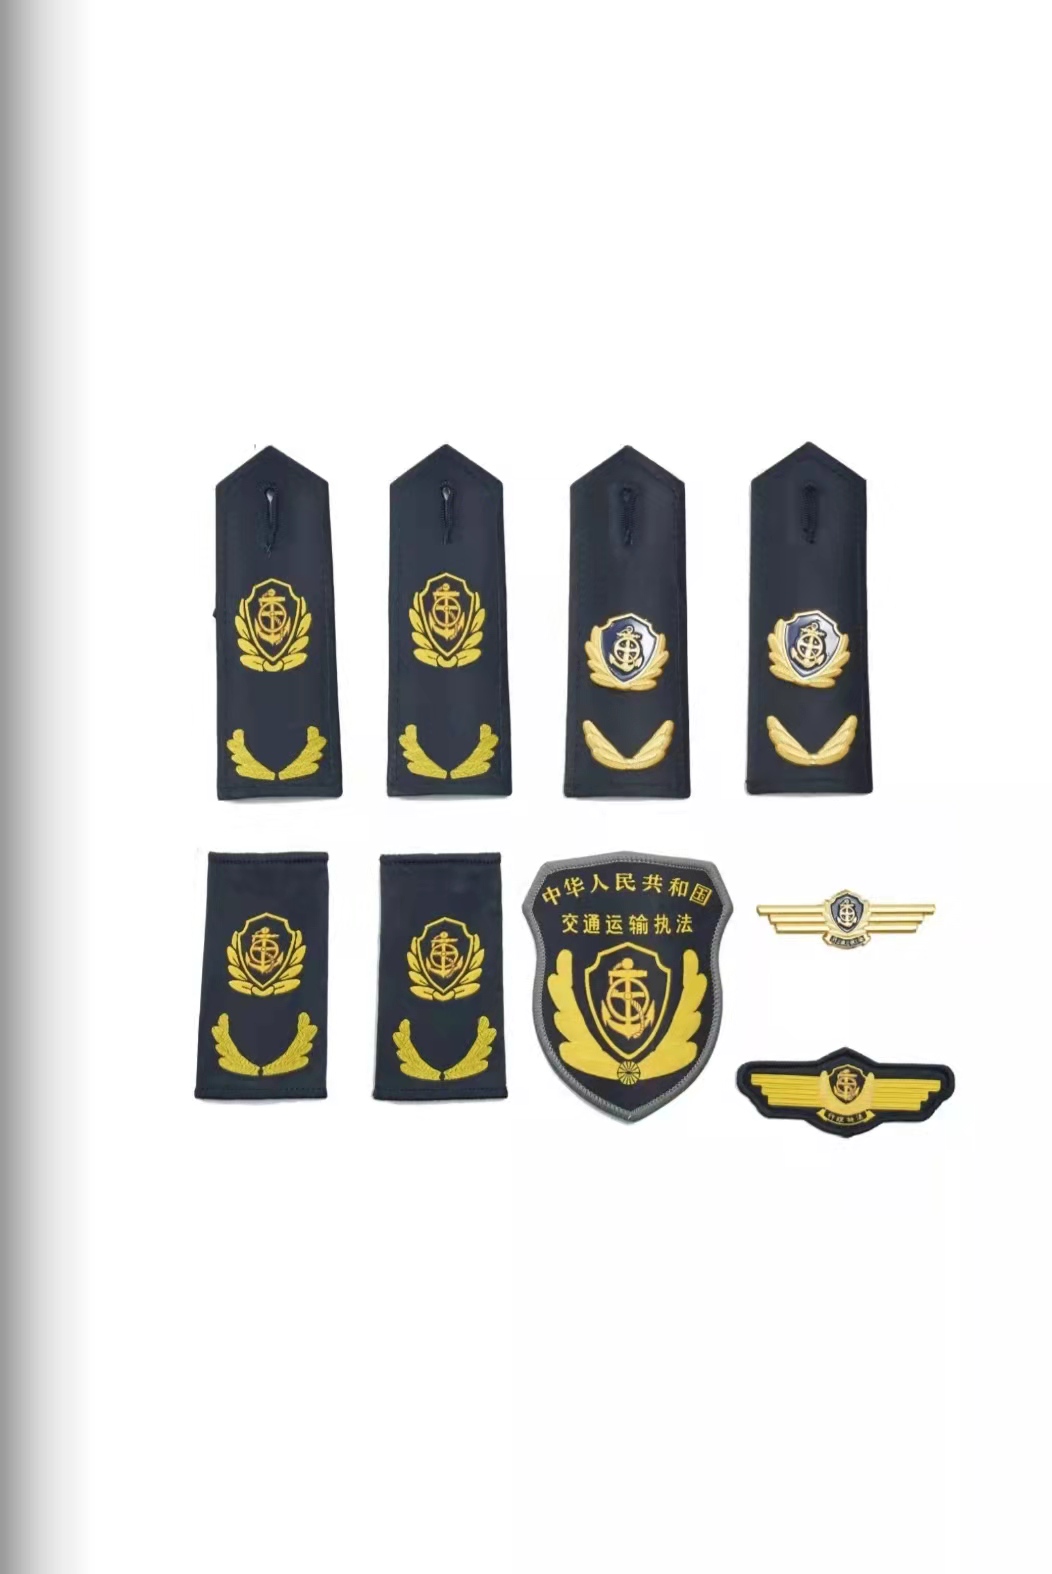 营口六部门统一交通运输执法服装标志